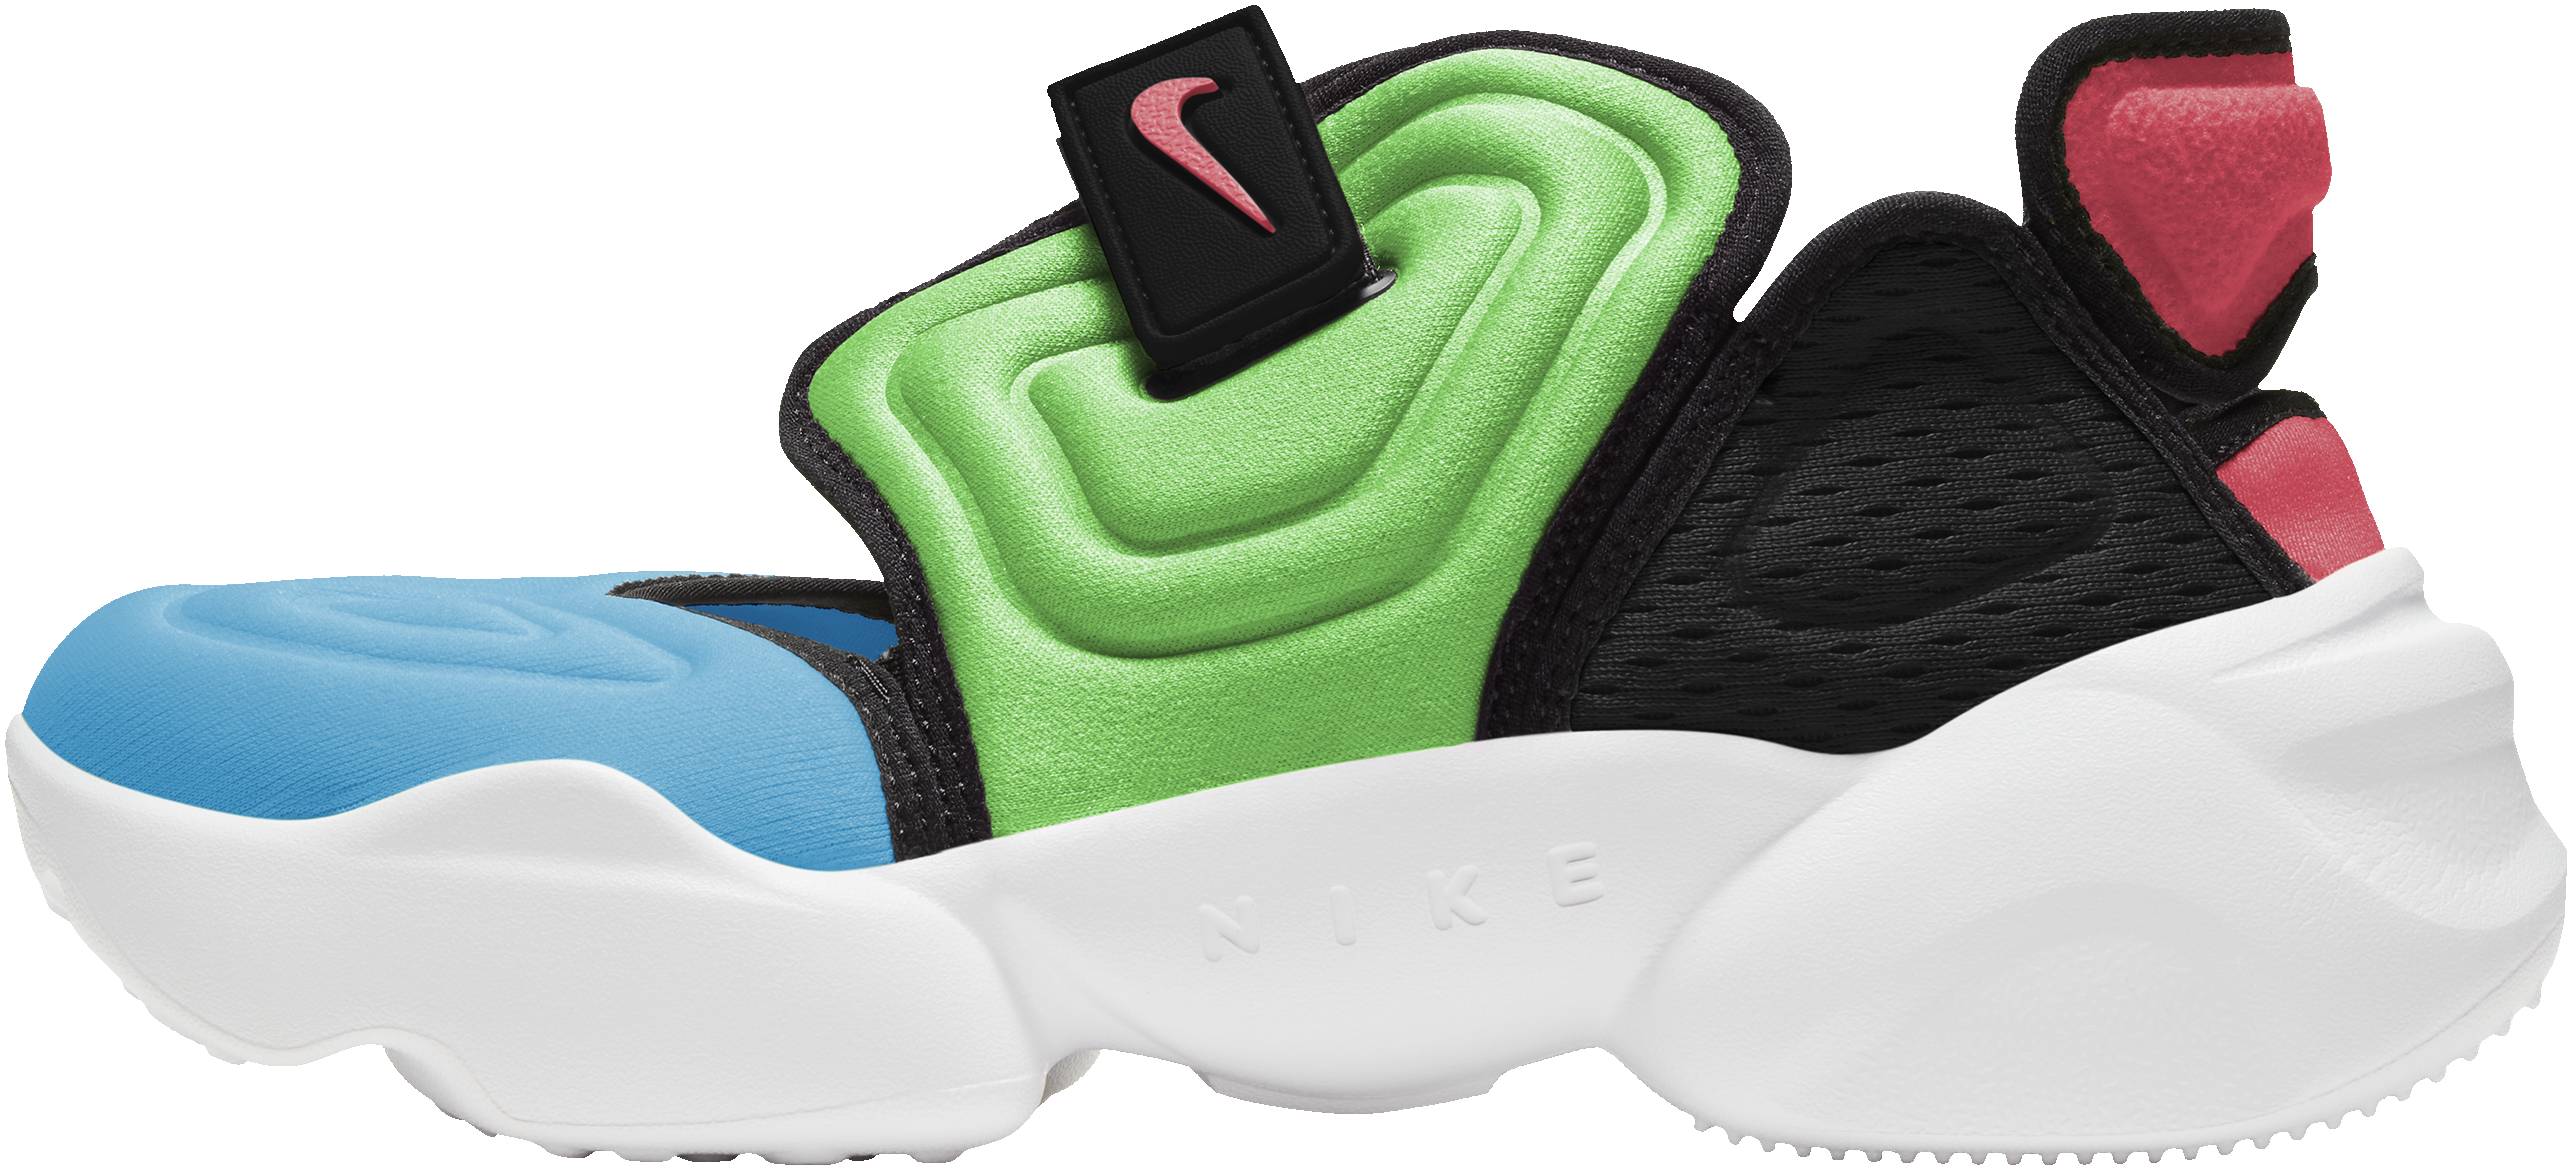 Nike Aqua Rift sneakers in 4 colors (only $65) | RunRepeat